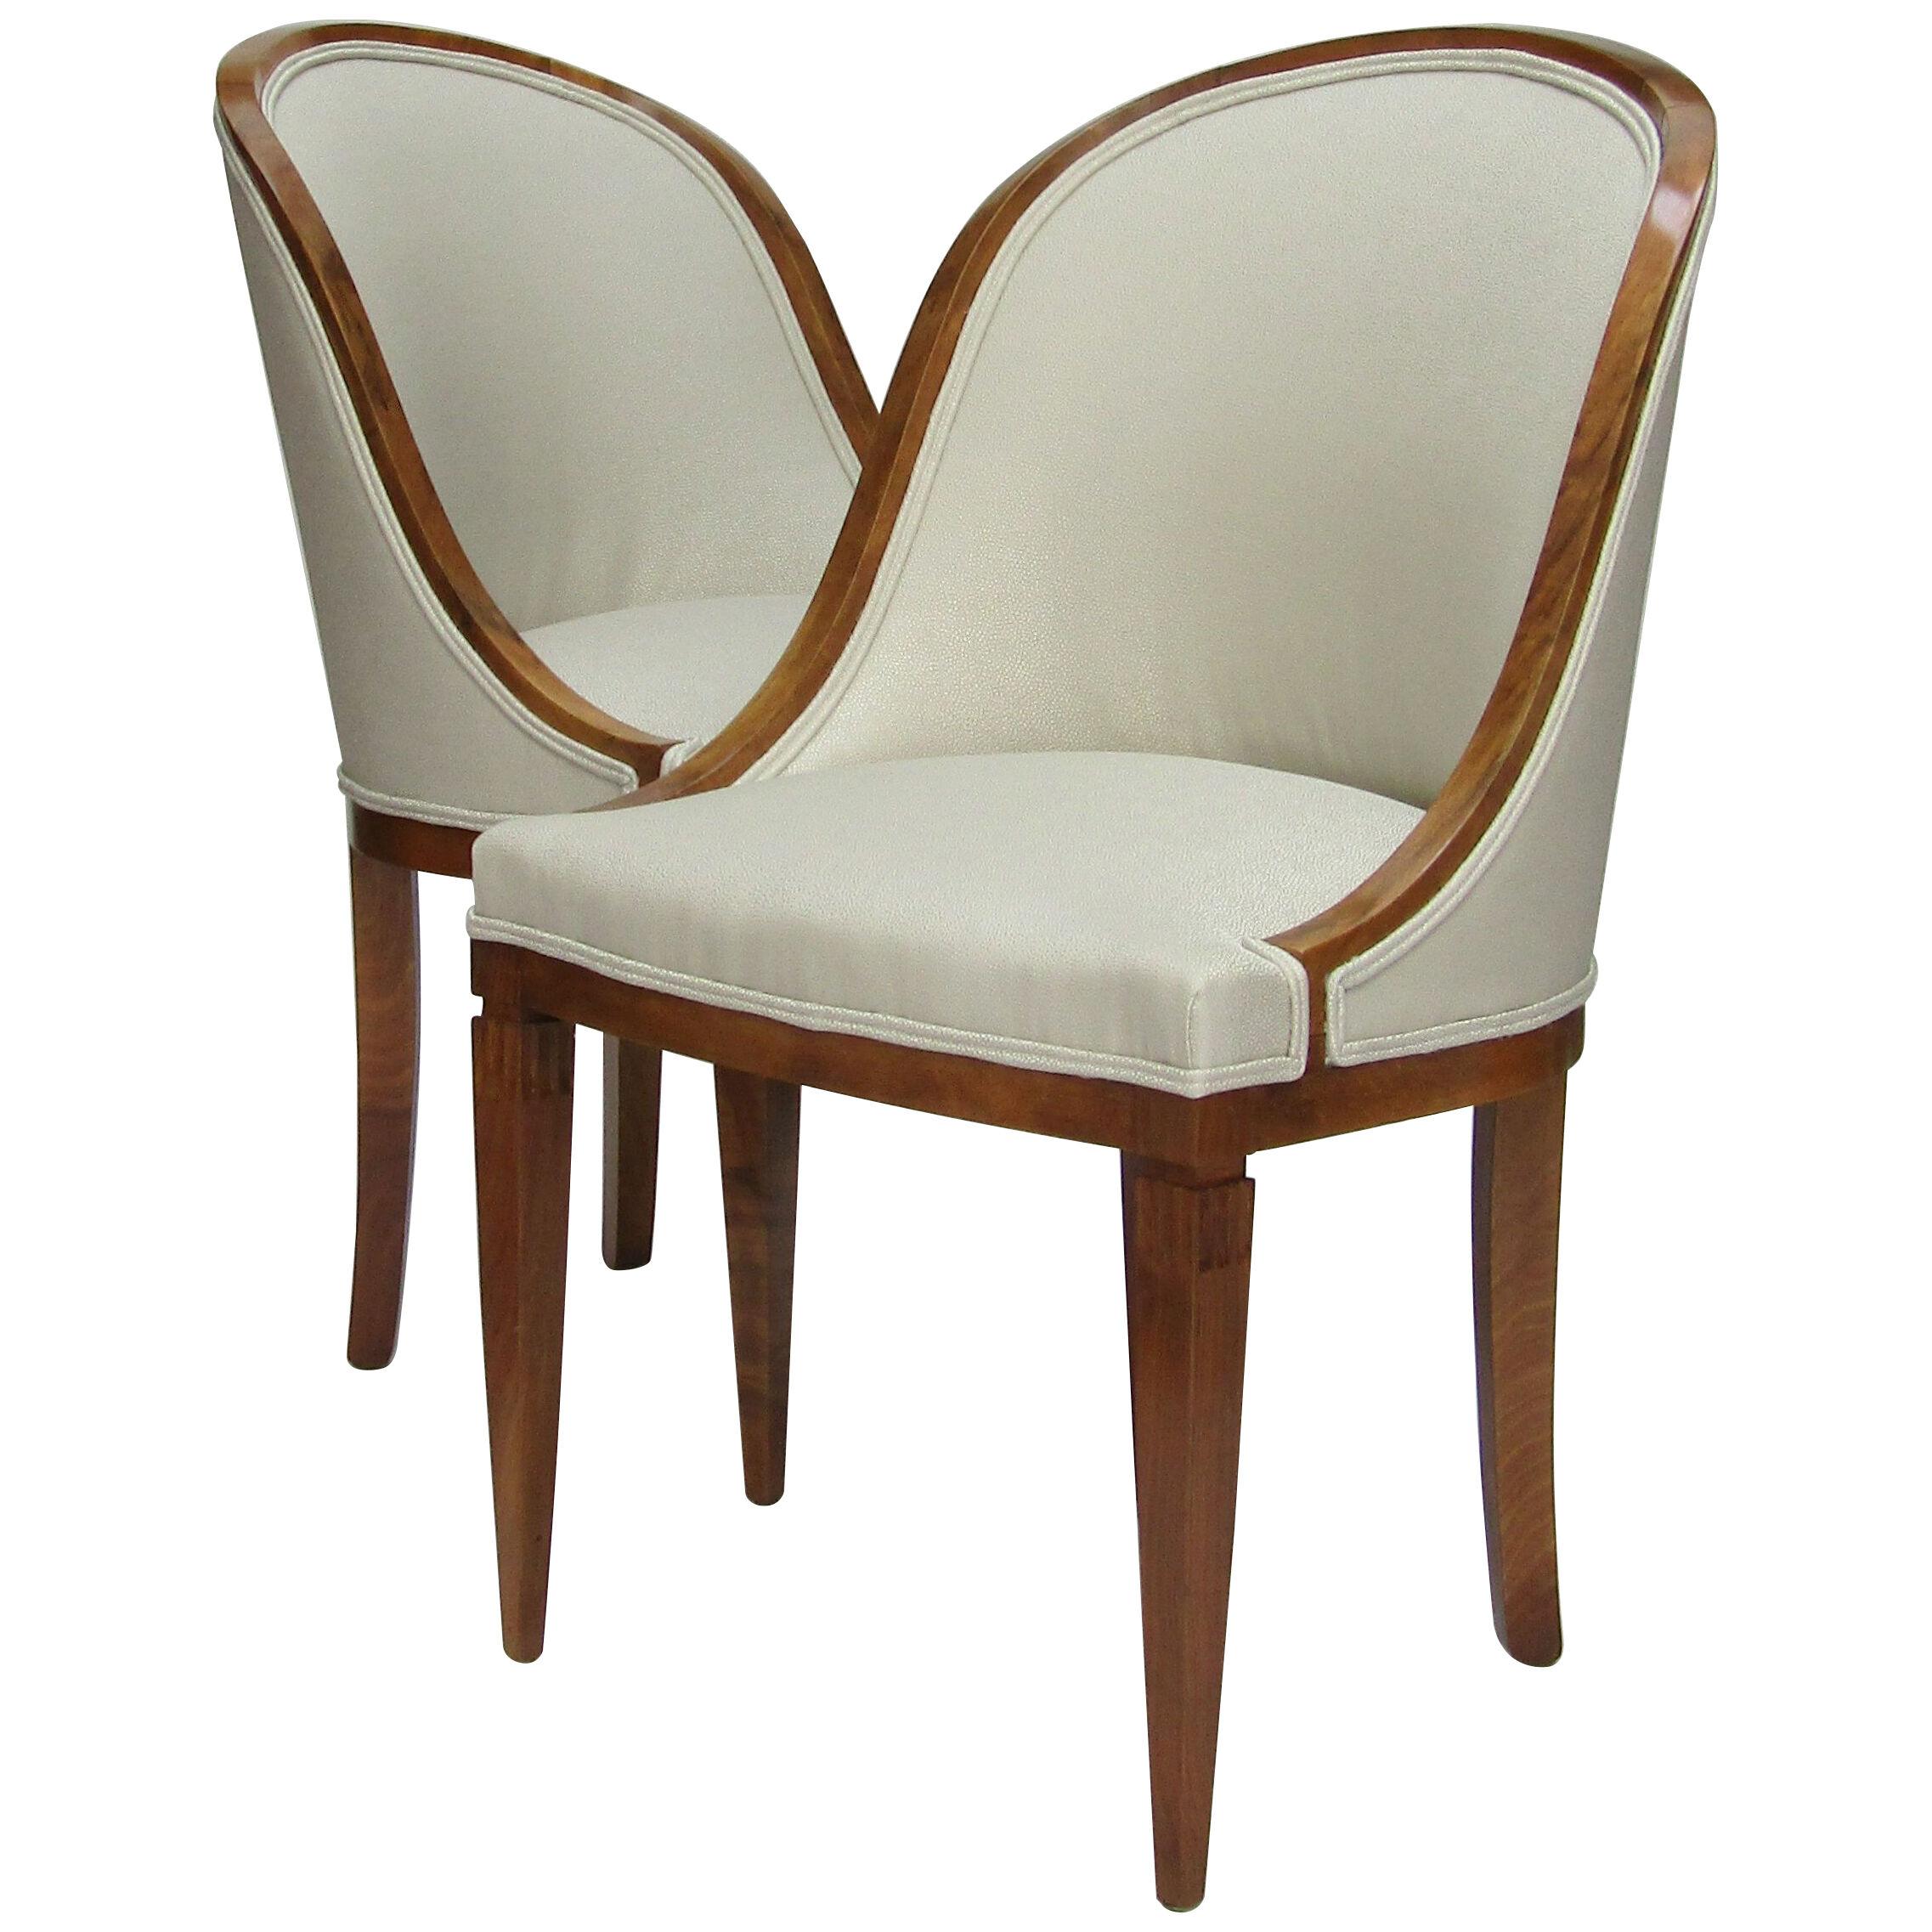 Pair of Biedermeier style chairs